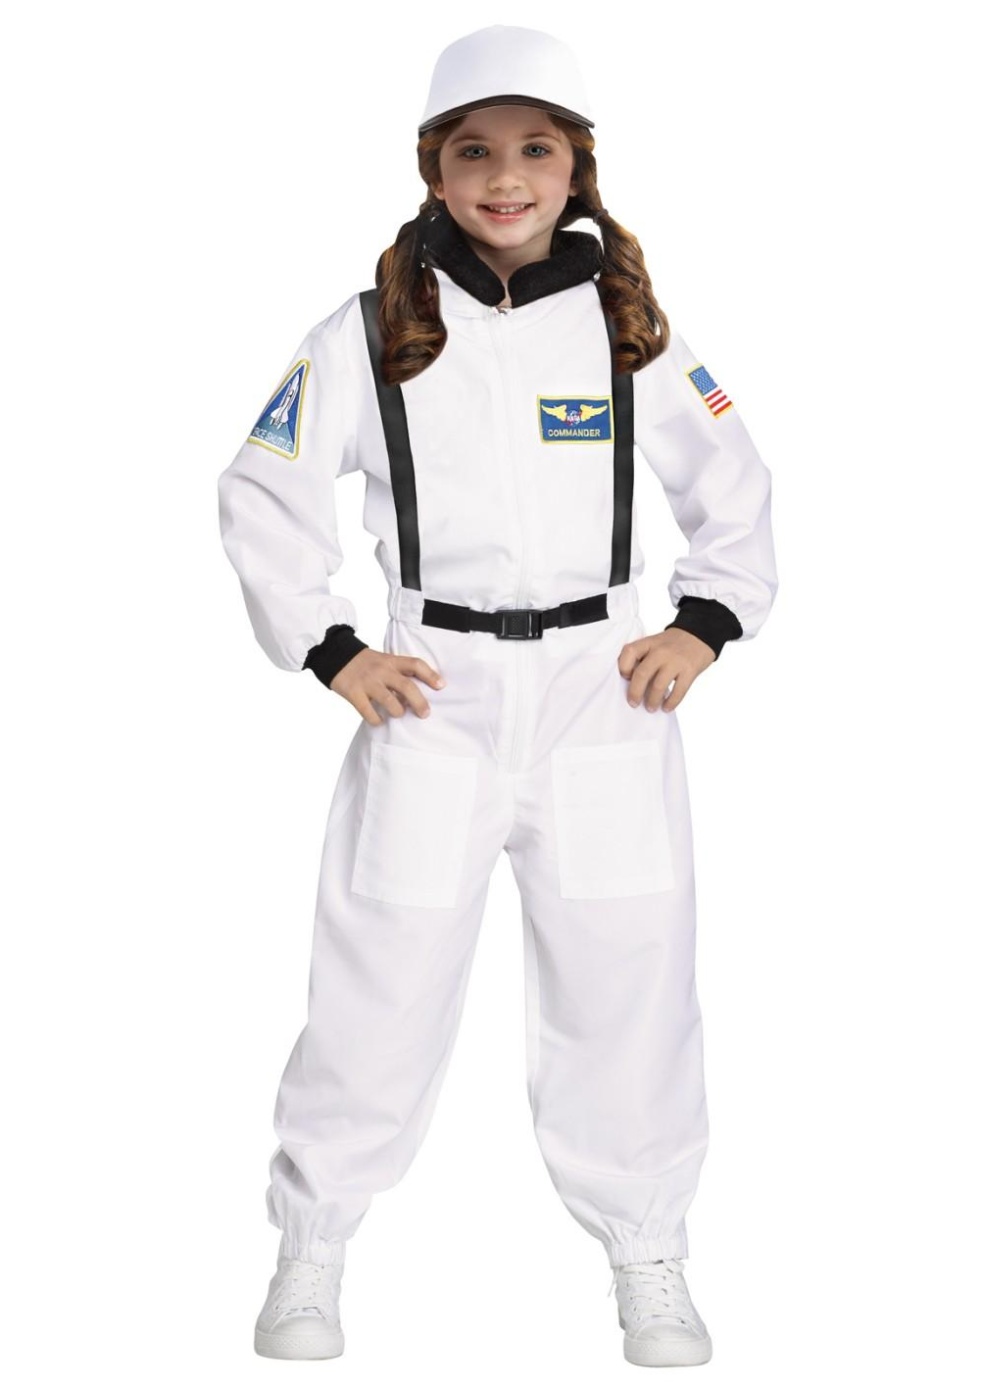  Shuttle Commander Kids Costume